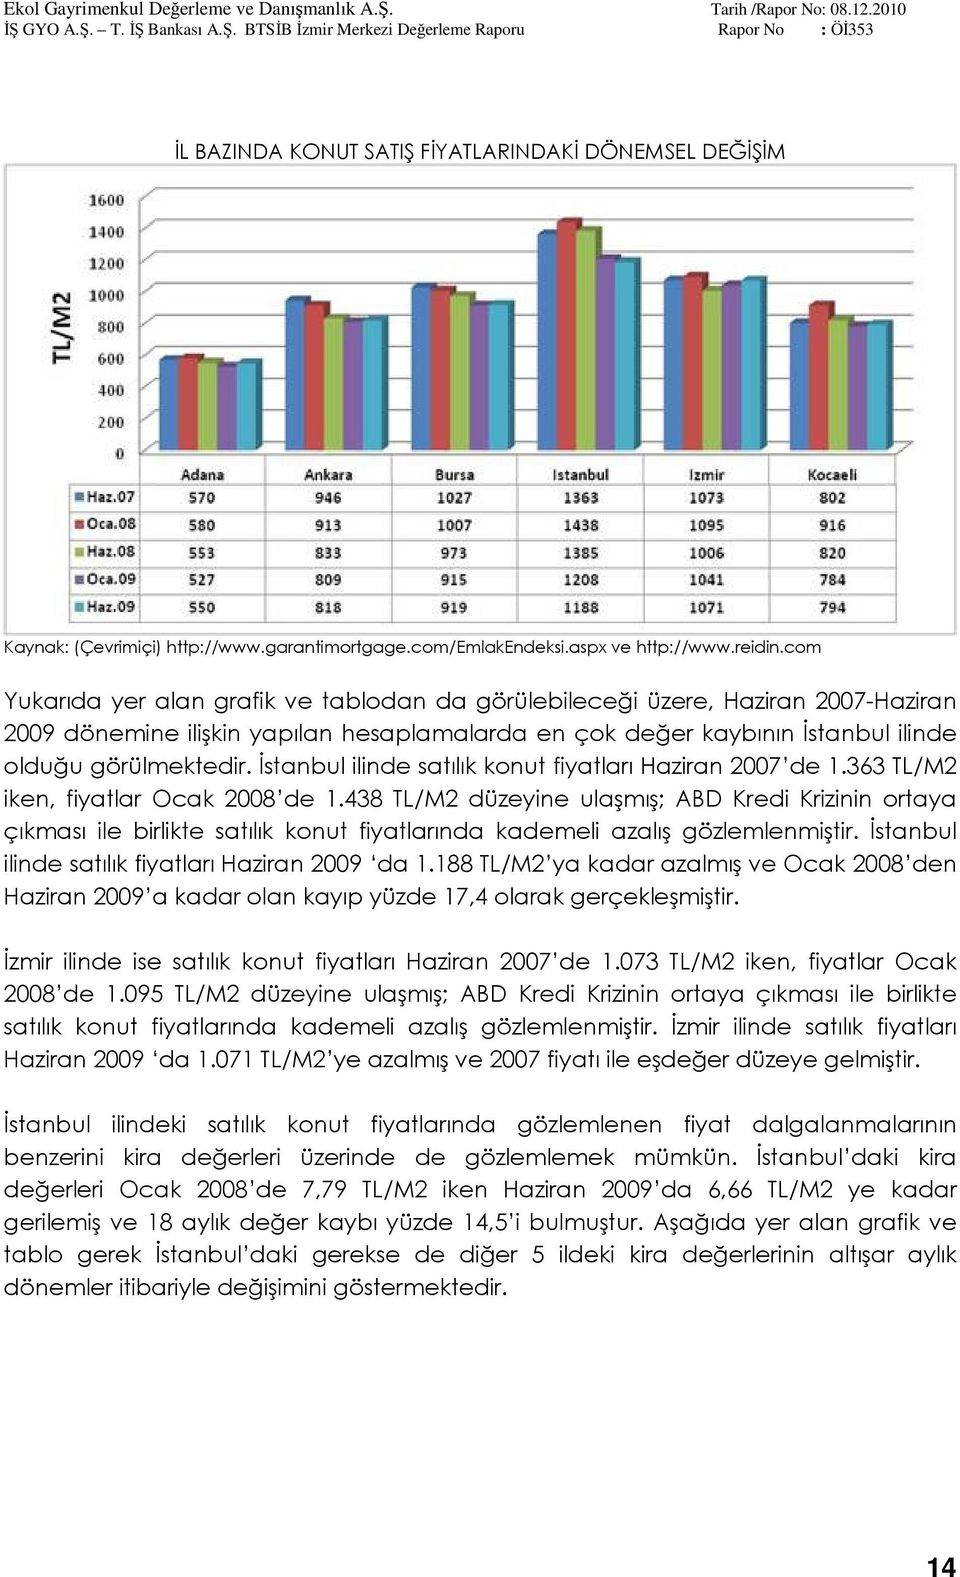 İstanbul ilinde satılık konut fiyatları Haziran 2007 de 1.363 TL/M2 iken, fiyatlar Ocak 2008 de 1.